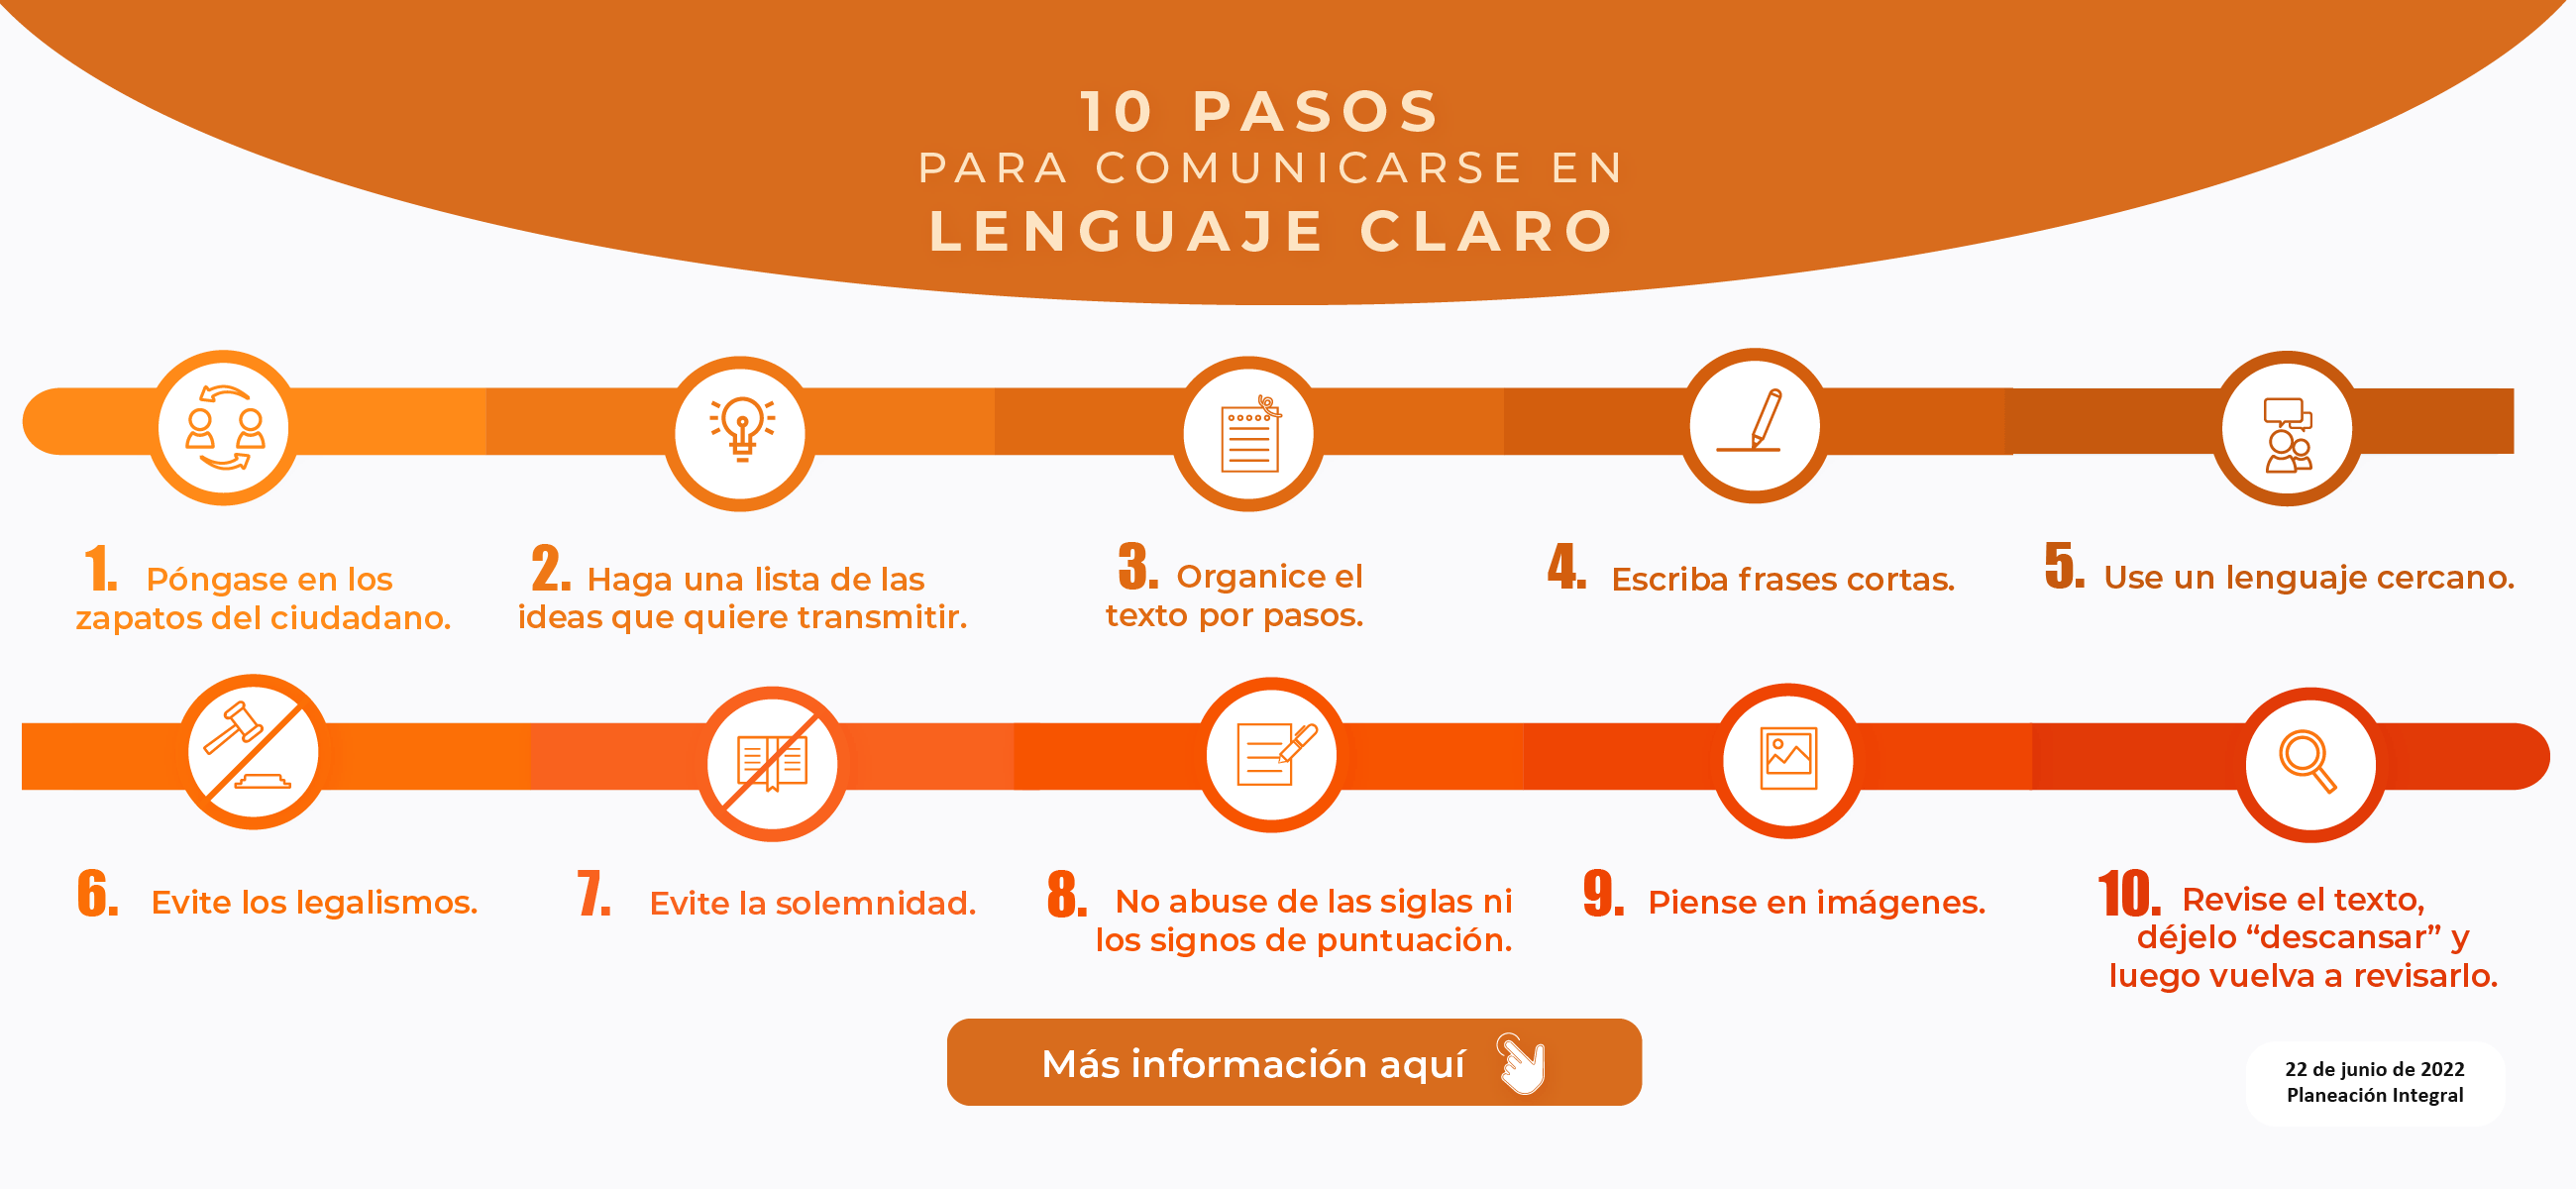 10 Pasos para comunicarse en lenguaje claro